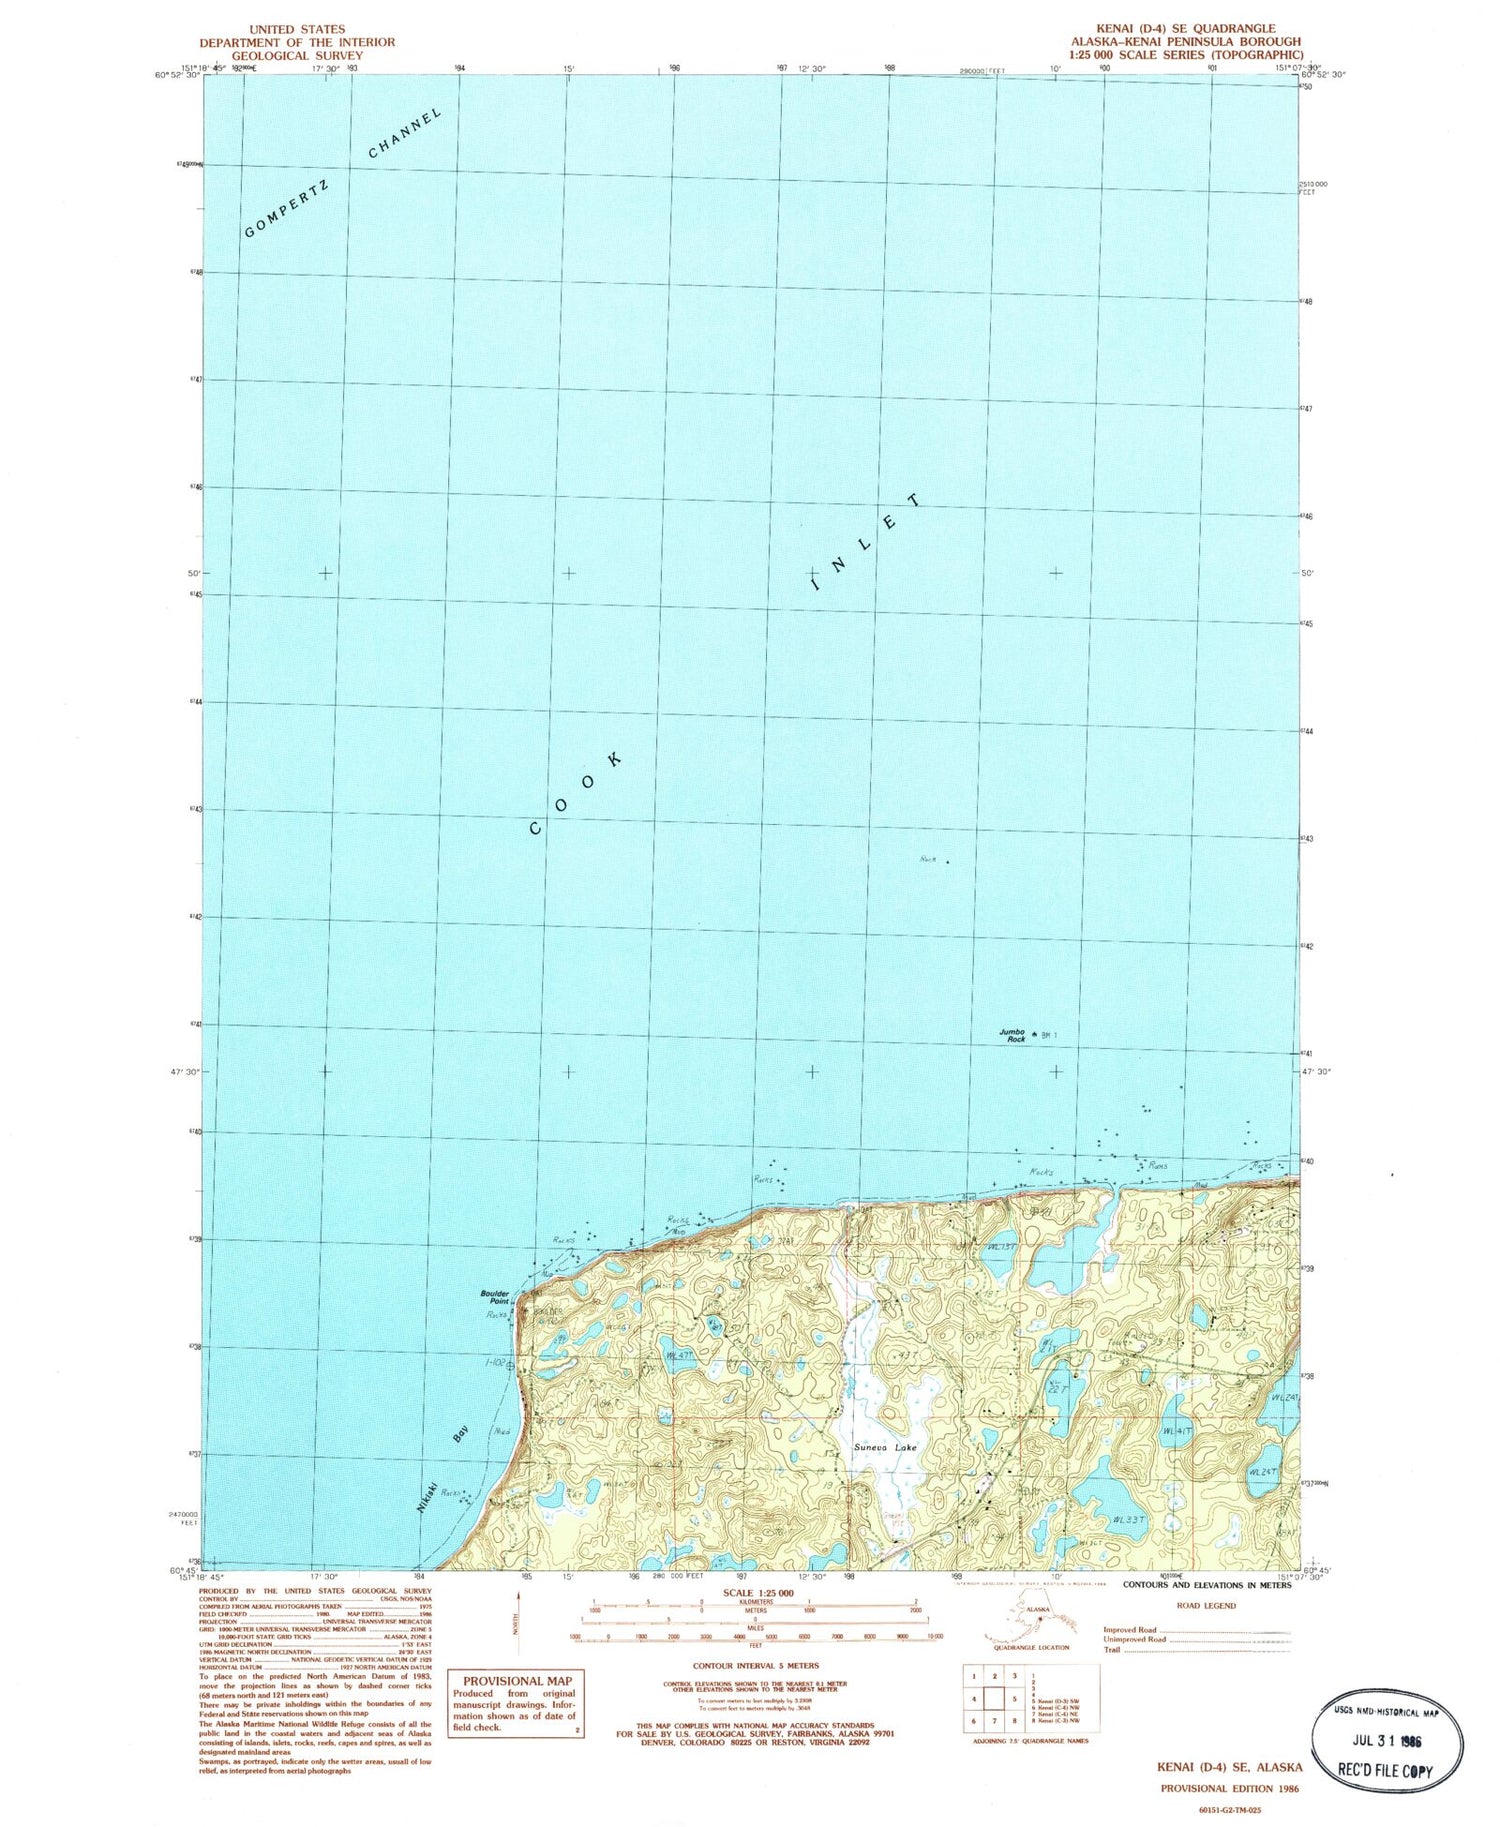 Classic USGS Kenai D-4 SE Alaska 7.5'x7.5' Topo Map Image